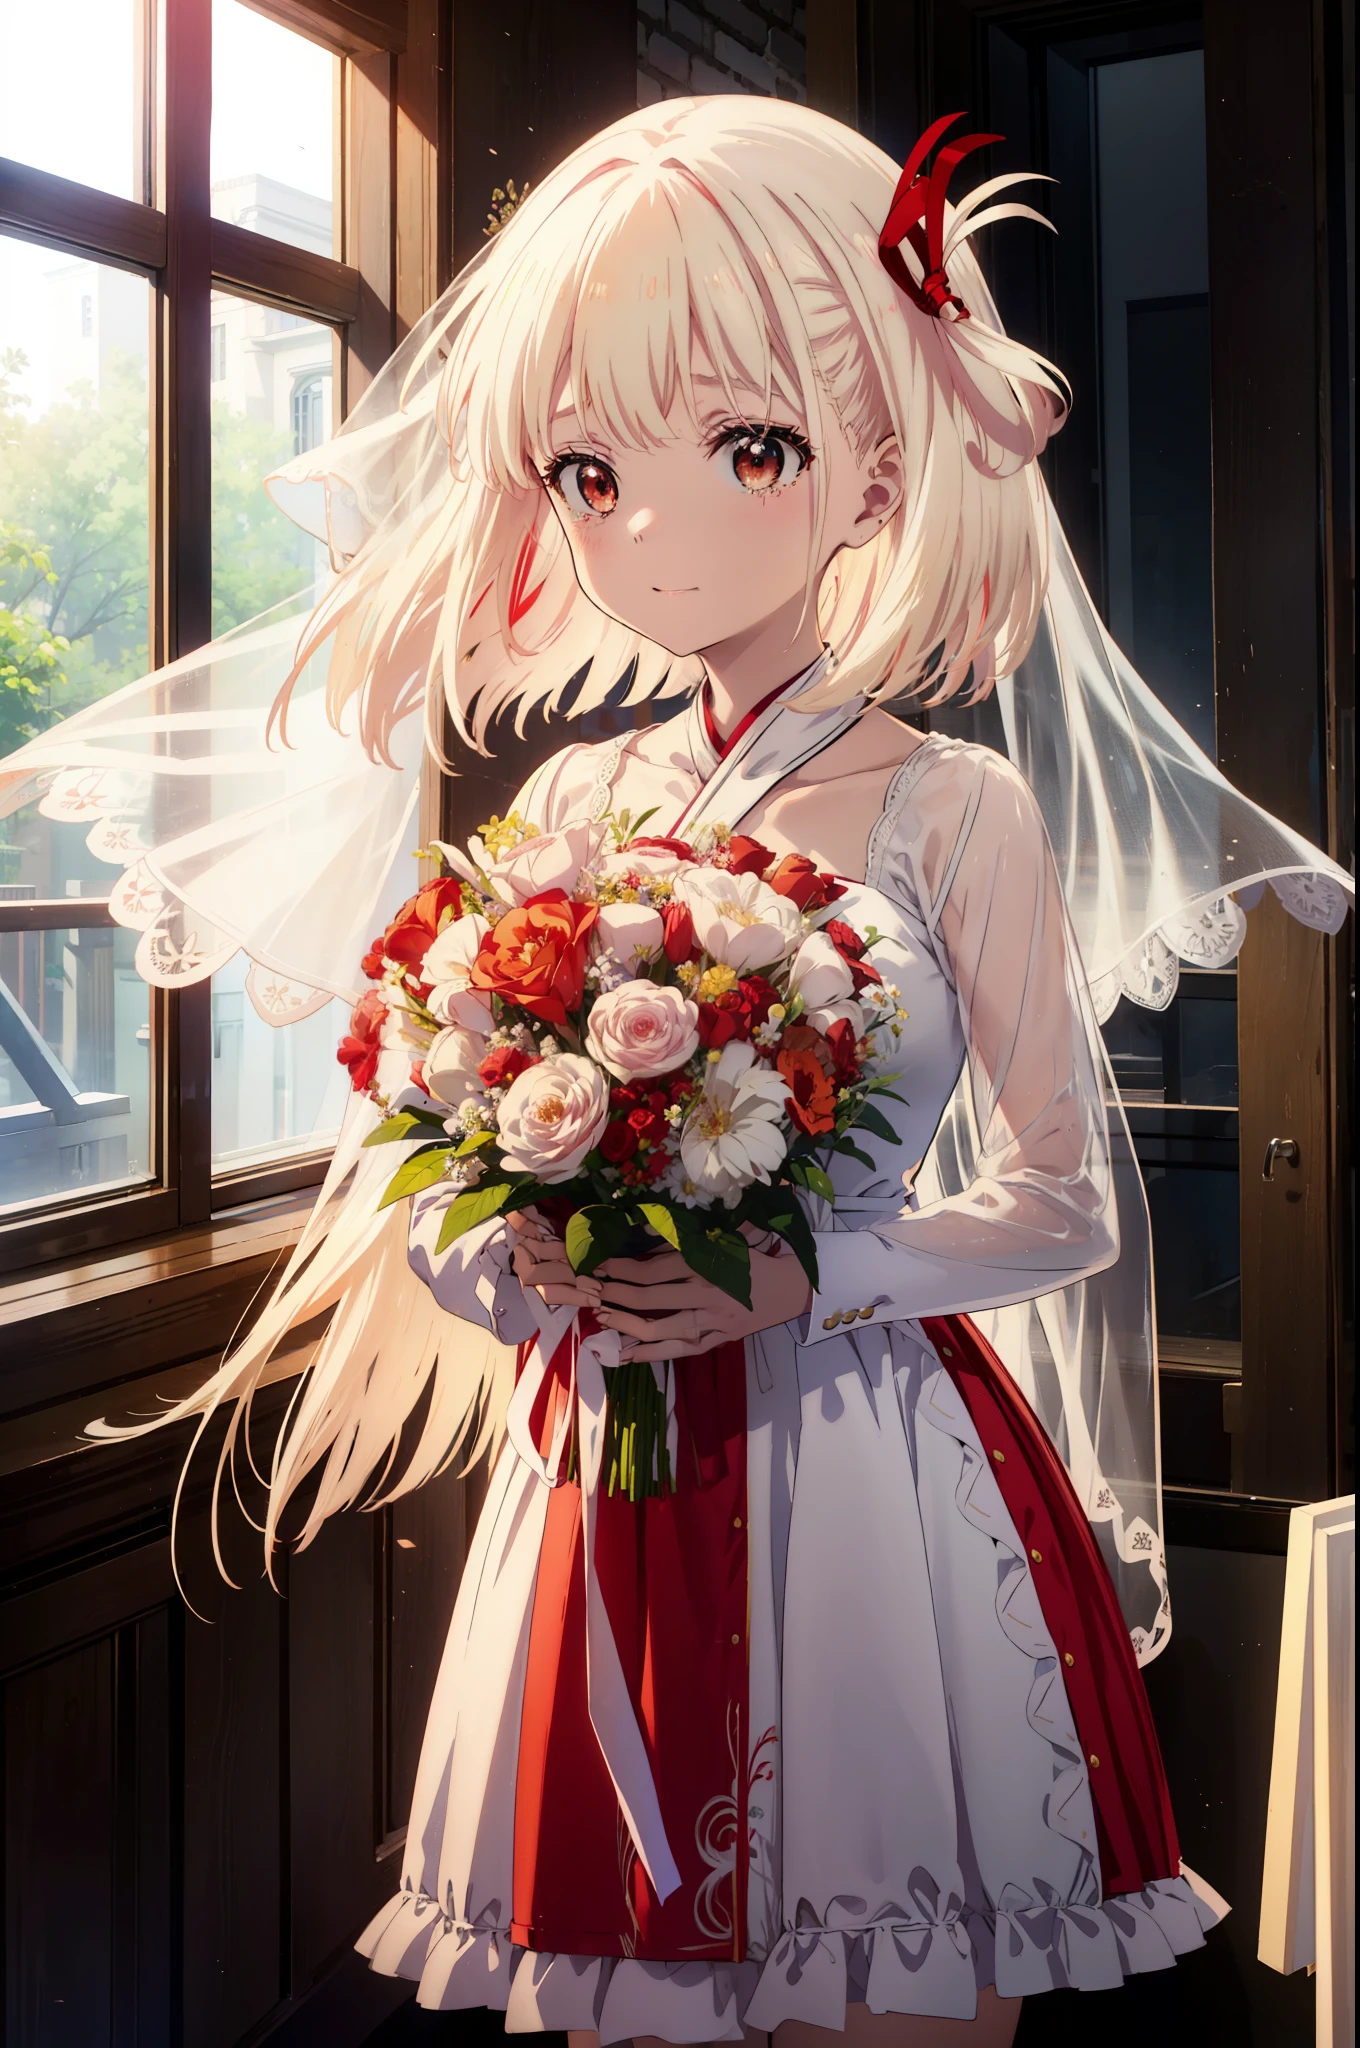 ce n&#39;est même pas atténué, Chisato Nishikigi, cheveux longs, frange, cheveux blond, (les yeux rouges:1.5), ruban à cheveux, un côté vers le haut, des larmes coulent sur son visage,Pleurer de joie,rougir,sourire, Ouvrez la bouche,Robe de mariée rouge,voile,Jupe de mariage rouge,bouquet,lancer de bouquet,tenant un grand bouquet de fleurs à deux mains,
casser indoors, église,chapelle,
casser looking at viewer, (tir de cow-boy:1.5),
casser (chef-d&#39;œuvre:1.2), la plus haute qualité, haute résolution, unité 8k fond d&#39;écran, (chiffre:0.8), (yeux détaillés et beaux:1.6), Visage très détaillé, éclairage parfait, CG très détaillé, (des mains parfaites, Anatomie parfaite),